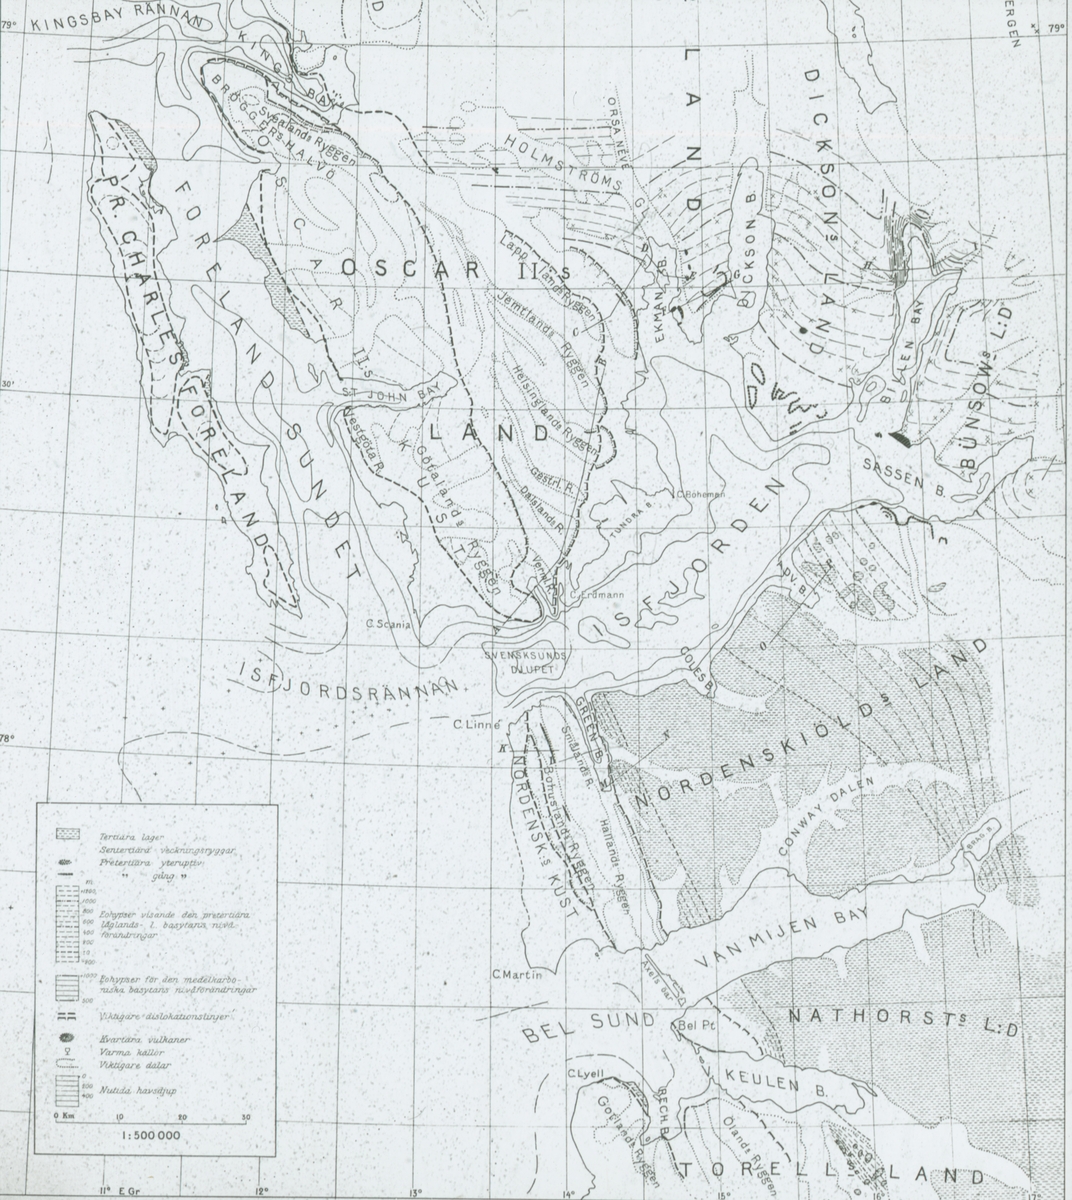 Fotografi från expedition till Spetsbergen. Karta över Spetsbergen.